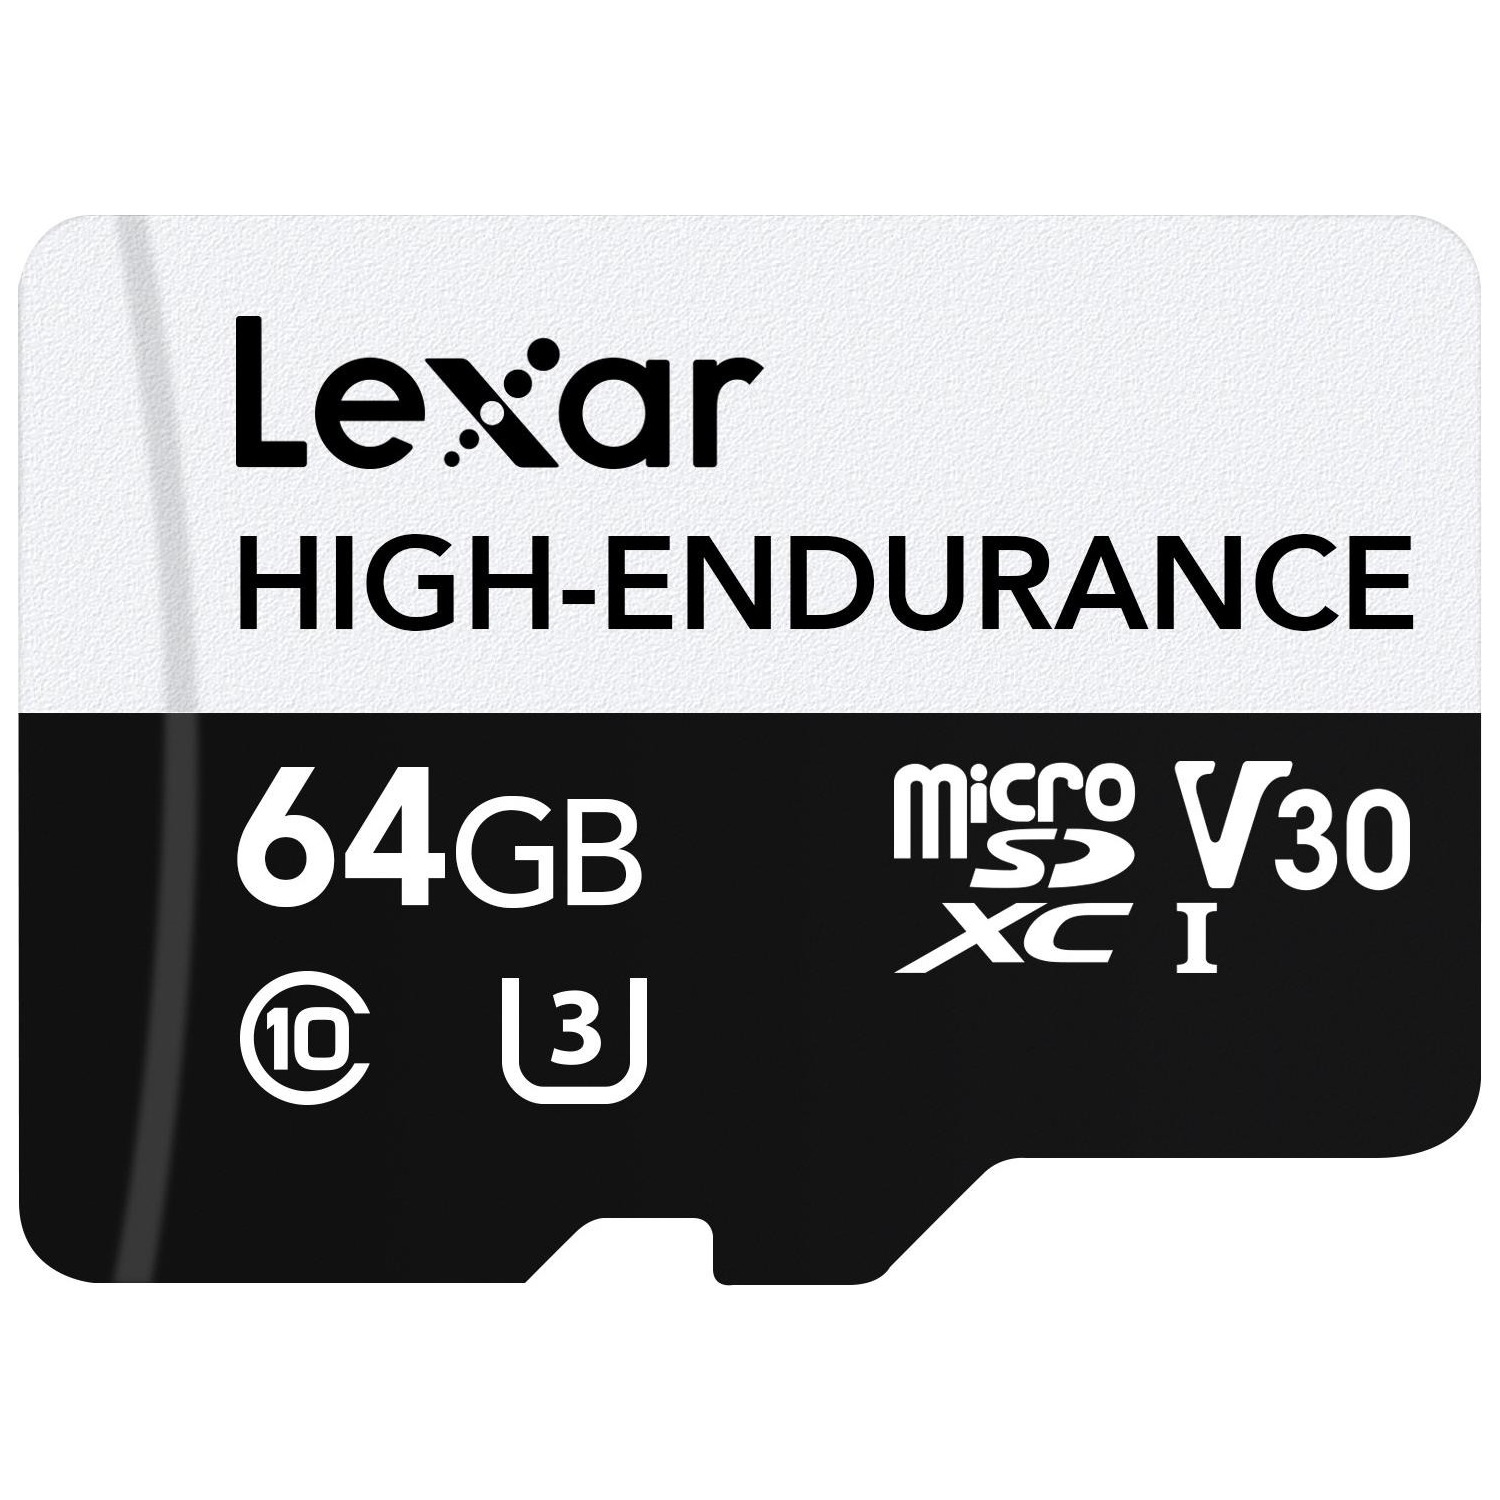 Immagine per MicroSD Lexar 64GB High-Endurance da DIMOStore